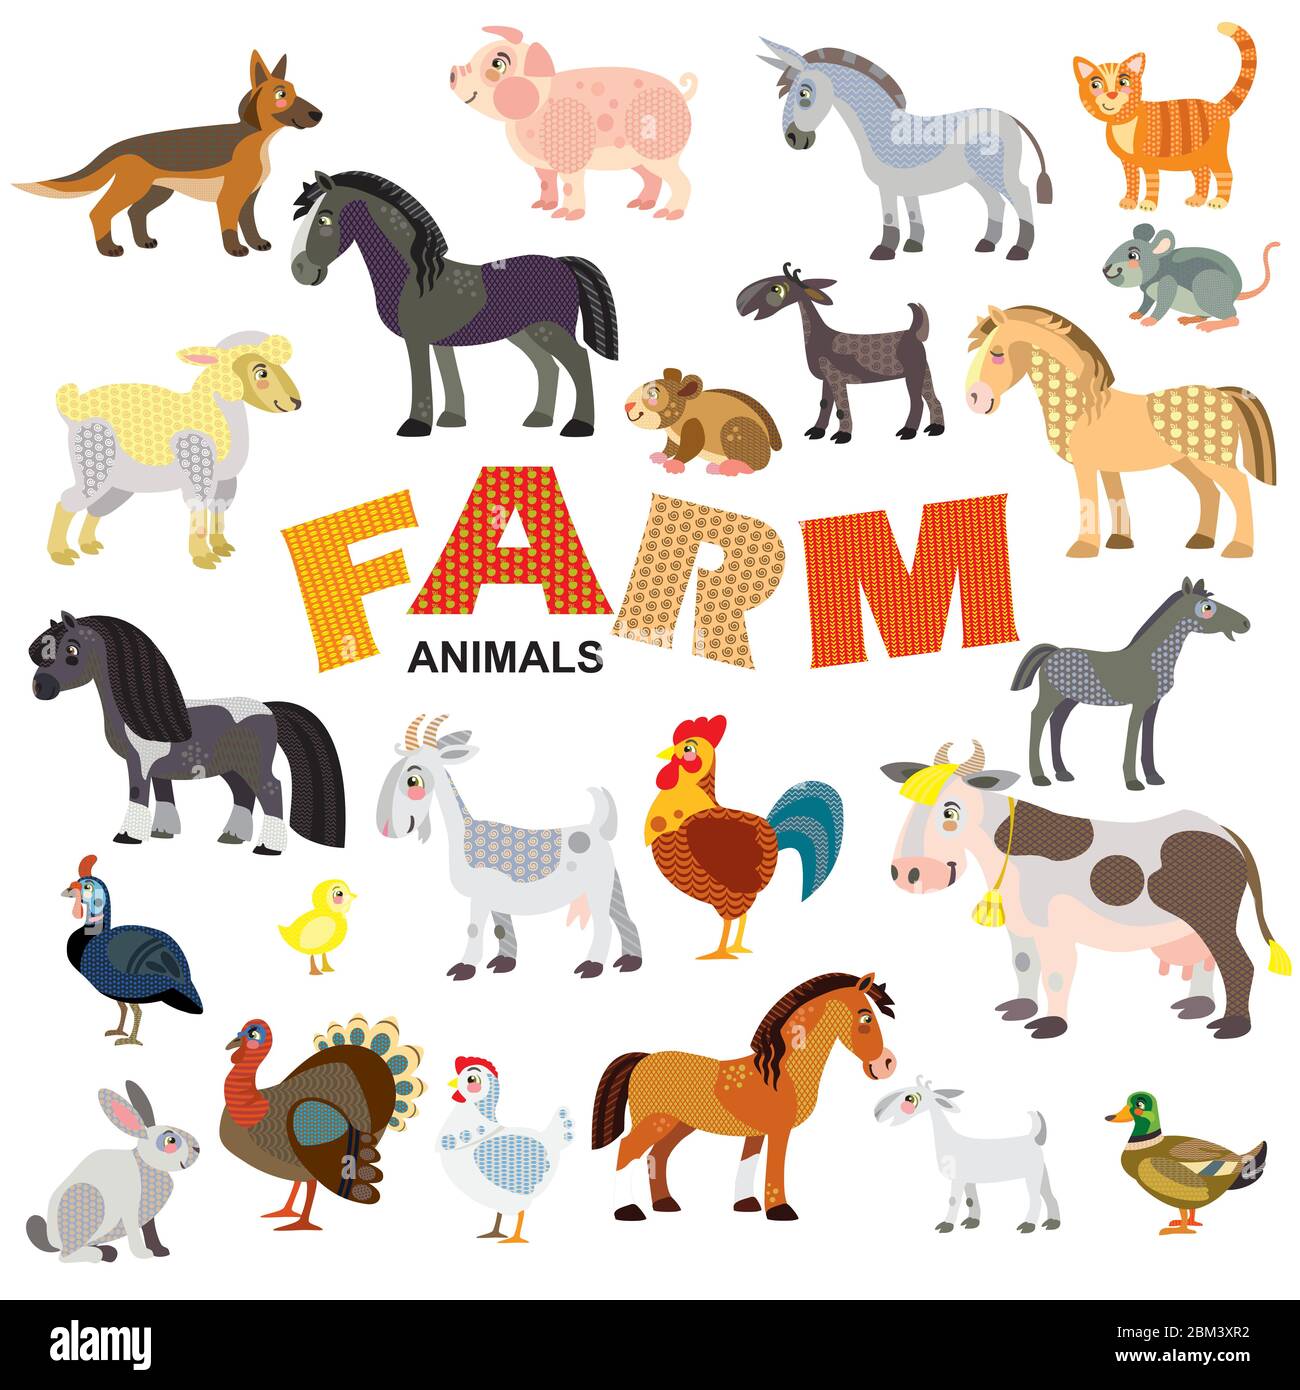 Bauernhof Tiere in der Vorderansicht und Seitenansicht große Vektor-Cartoon in flachem Stil isoliert auf weißem Hintergrund gesetzt. Vektorgrafik von Tieren für Kinder Stock Vektor